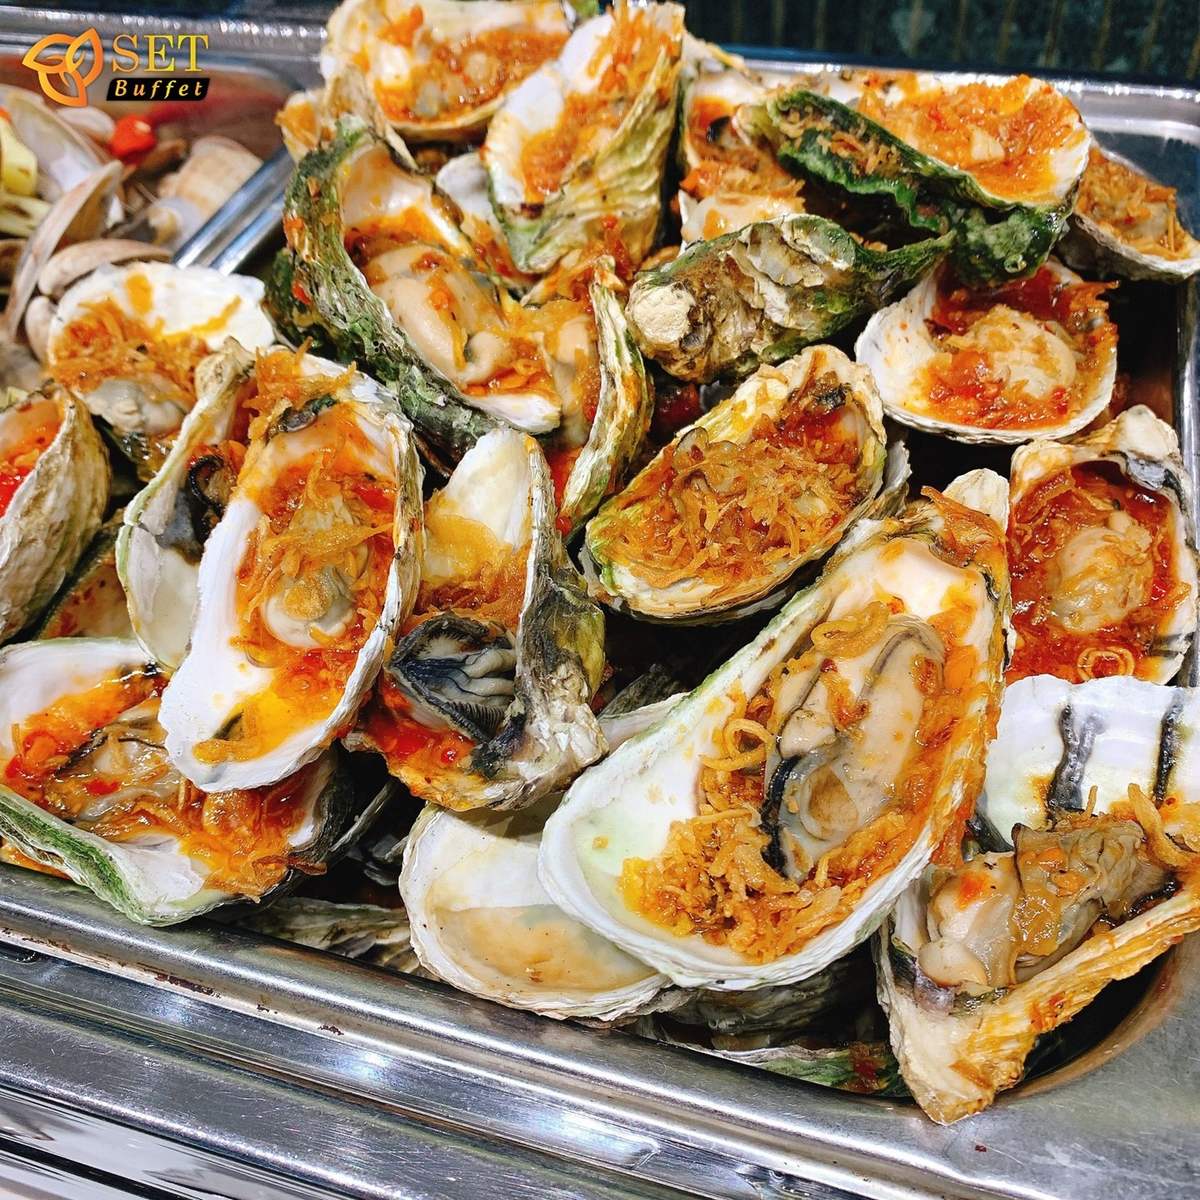 SET Buffet - Nơi thưởng thức hải sản thượng hạng tại Hà Nội 7